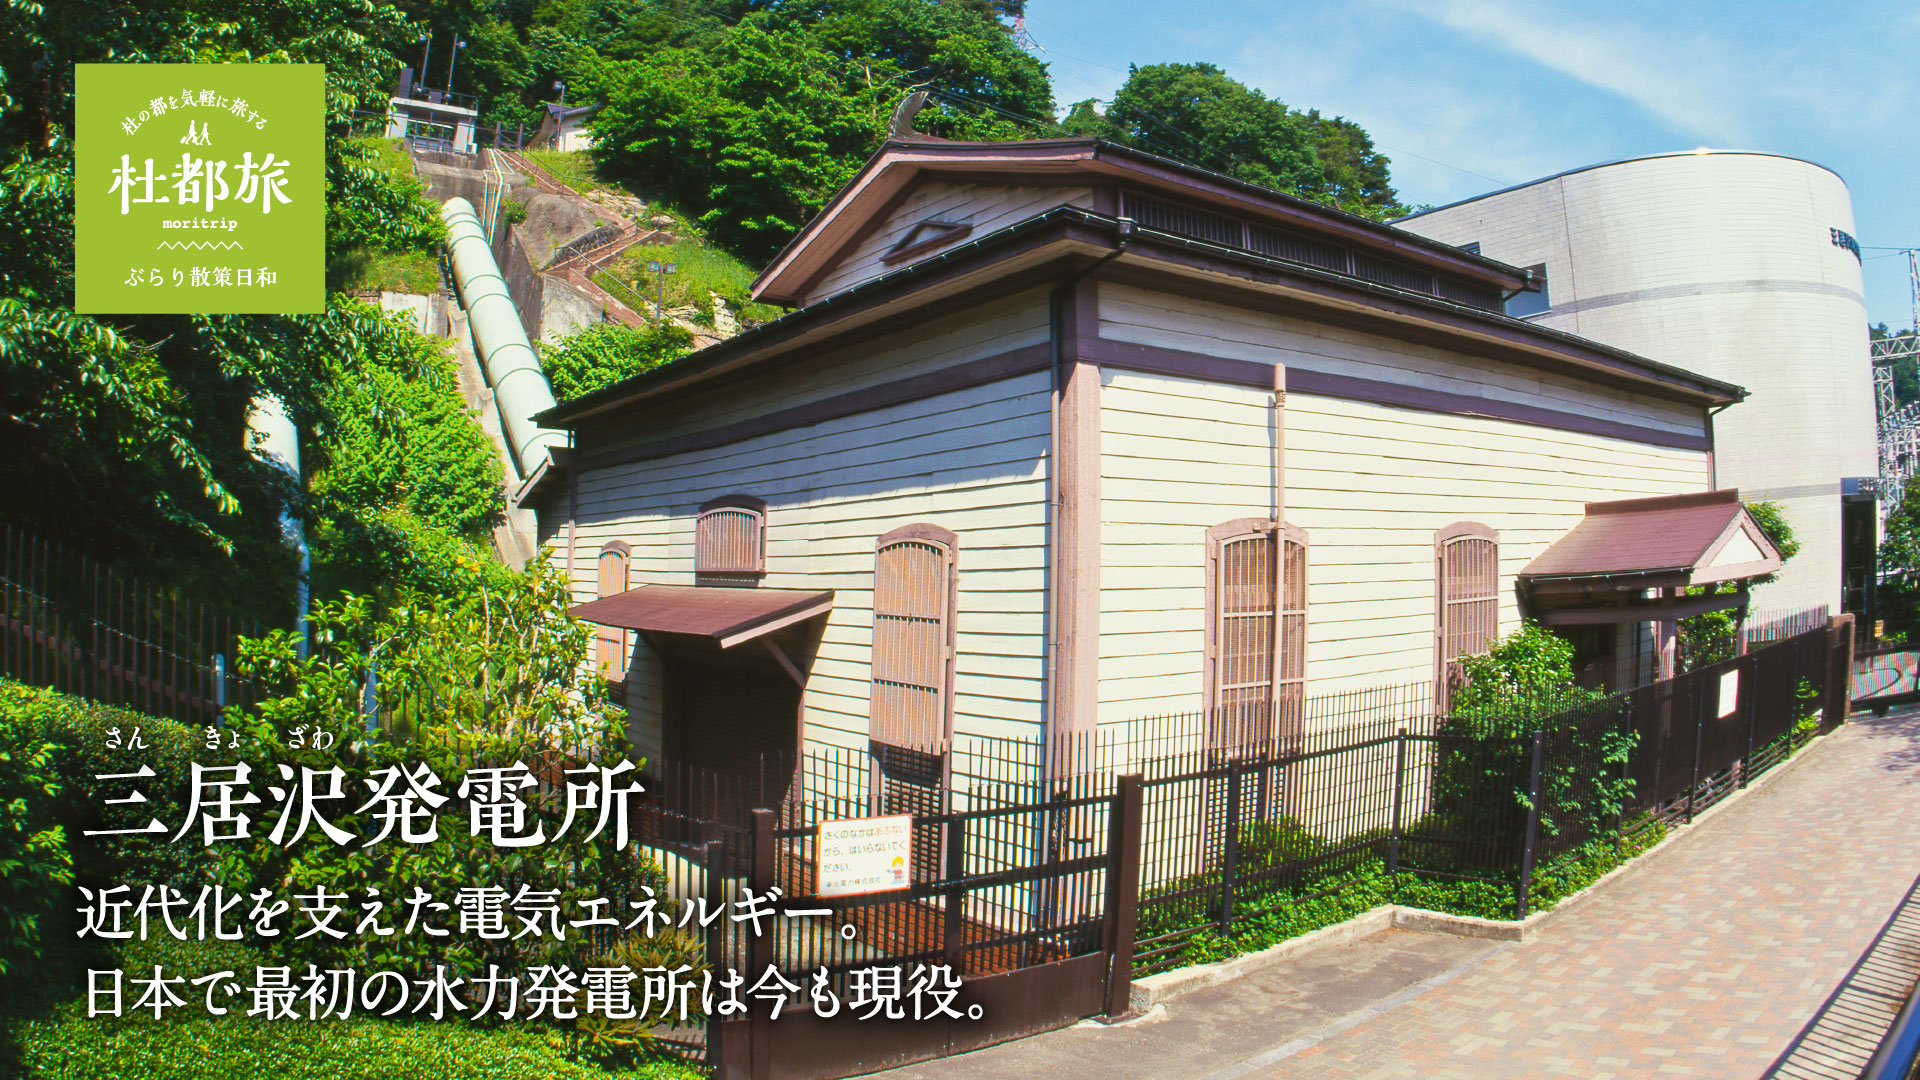 三居沢(さんきょざわ)発電所〜近代化を支えた電気エネルギー。日本で最初の水力発電所は今も現役。